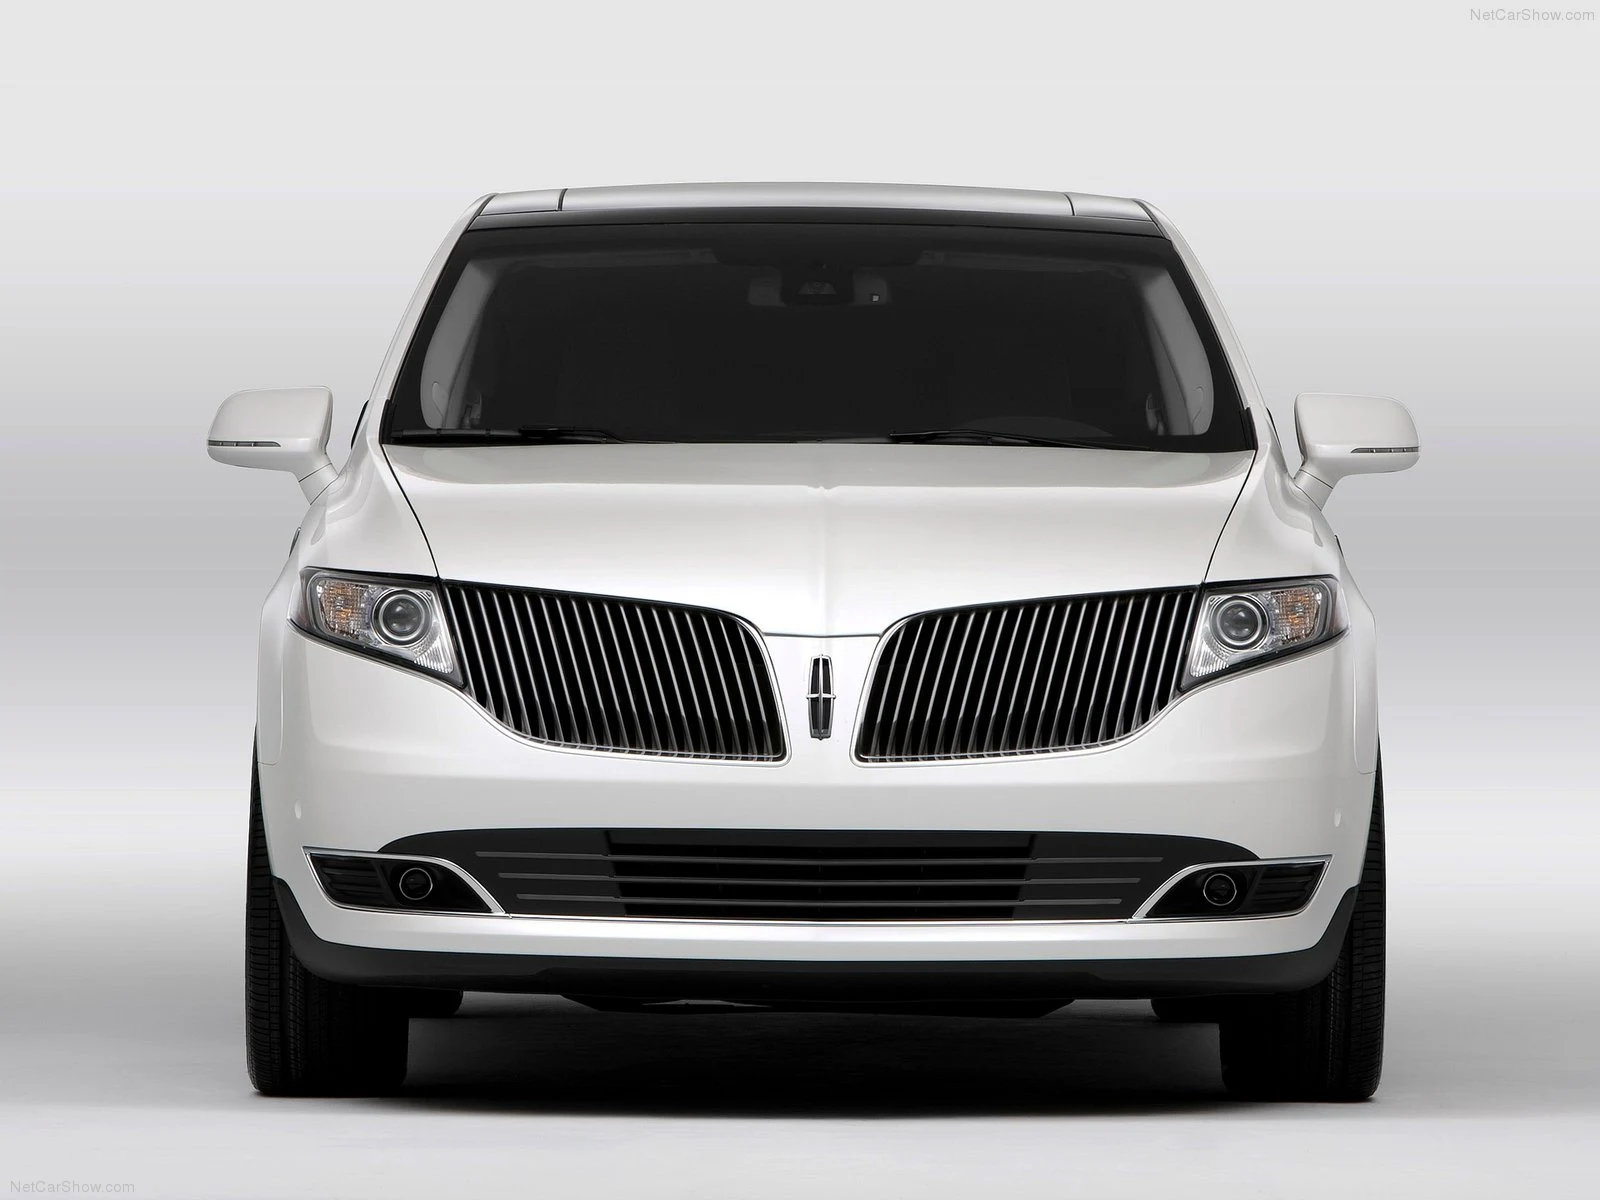 Hình ảnh xe ô tô Lincoln MKT 2013 & nội ngoại thất